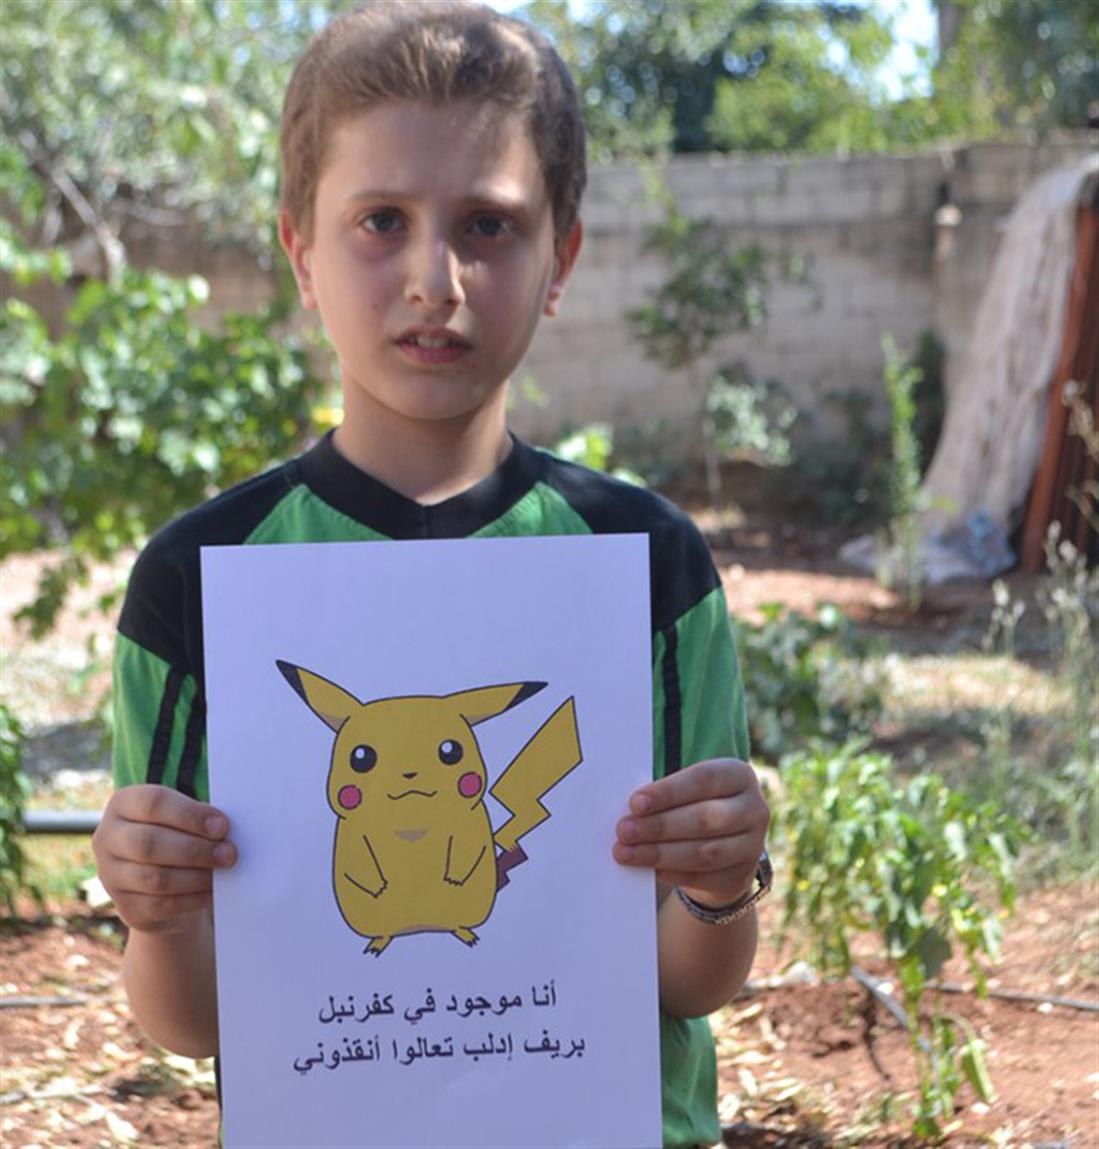 Συρία - παιδιά - Pokemon Go - εκστρατεία